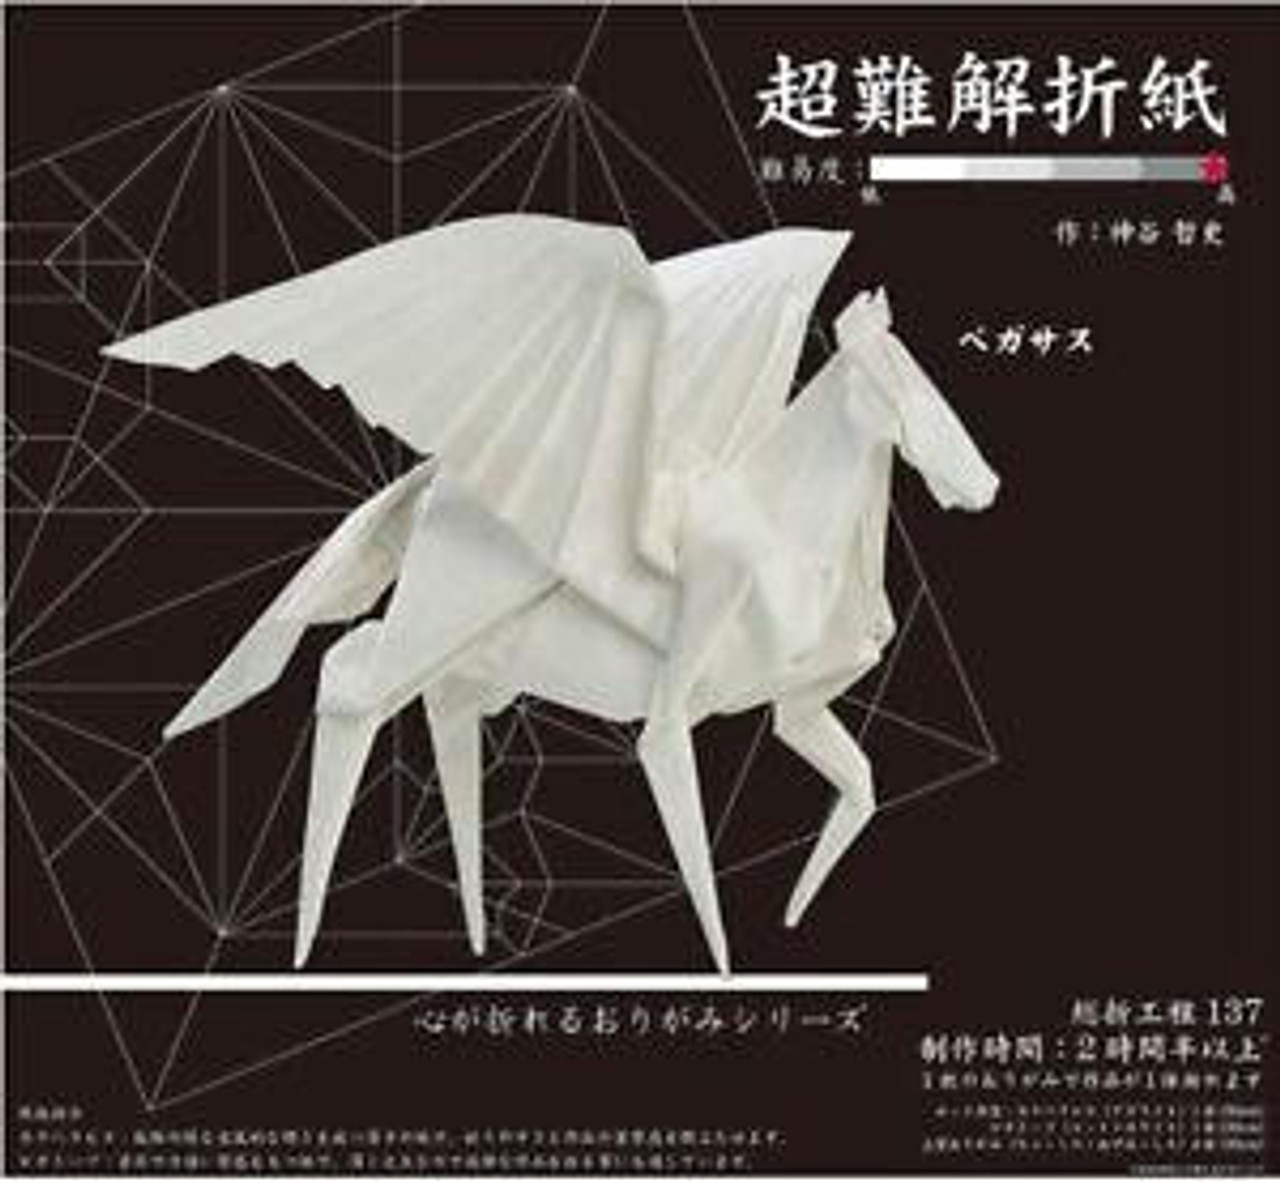 Ultra-Difficult Origami Set - Pegasus